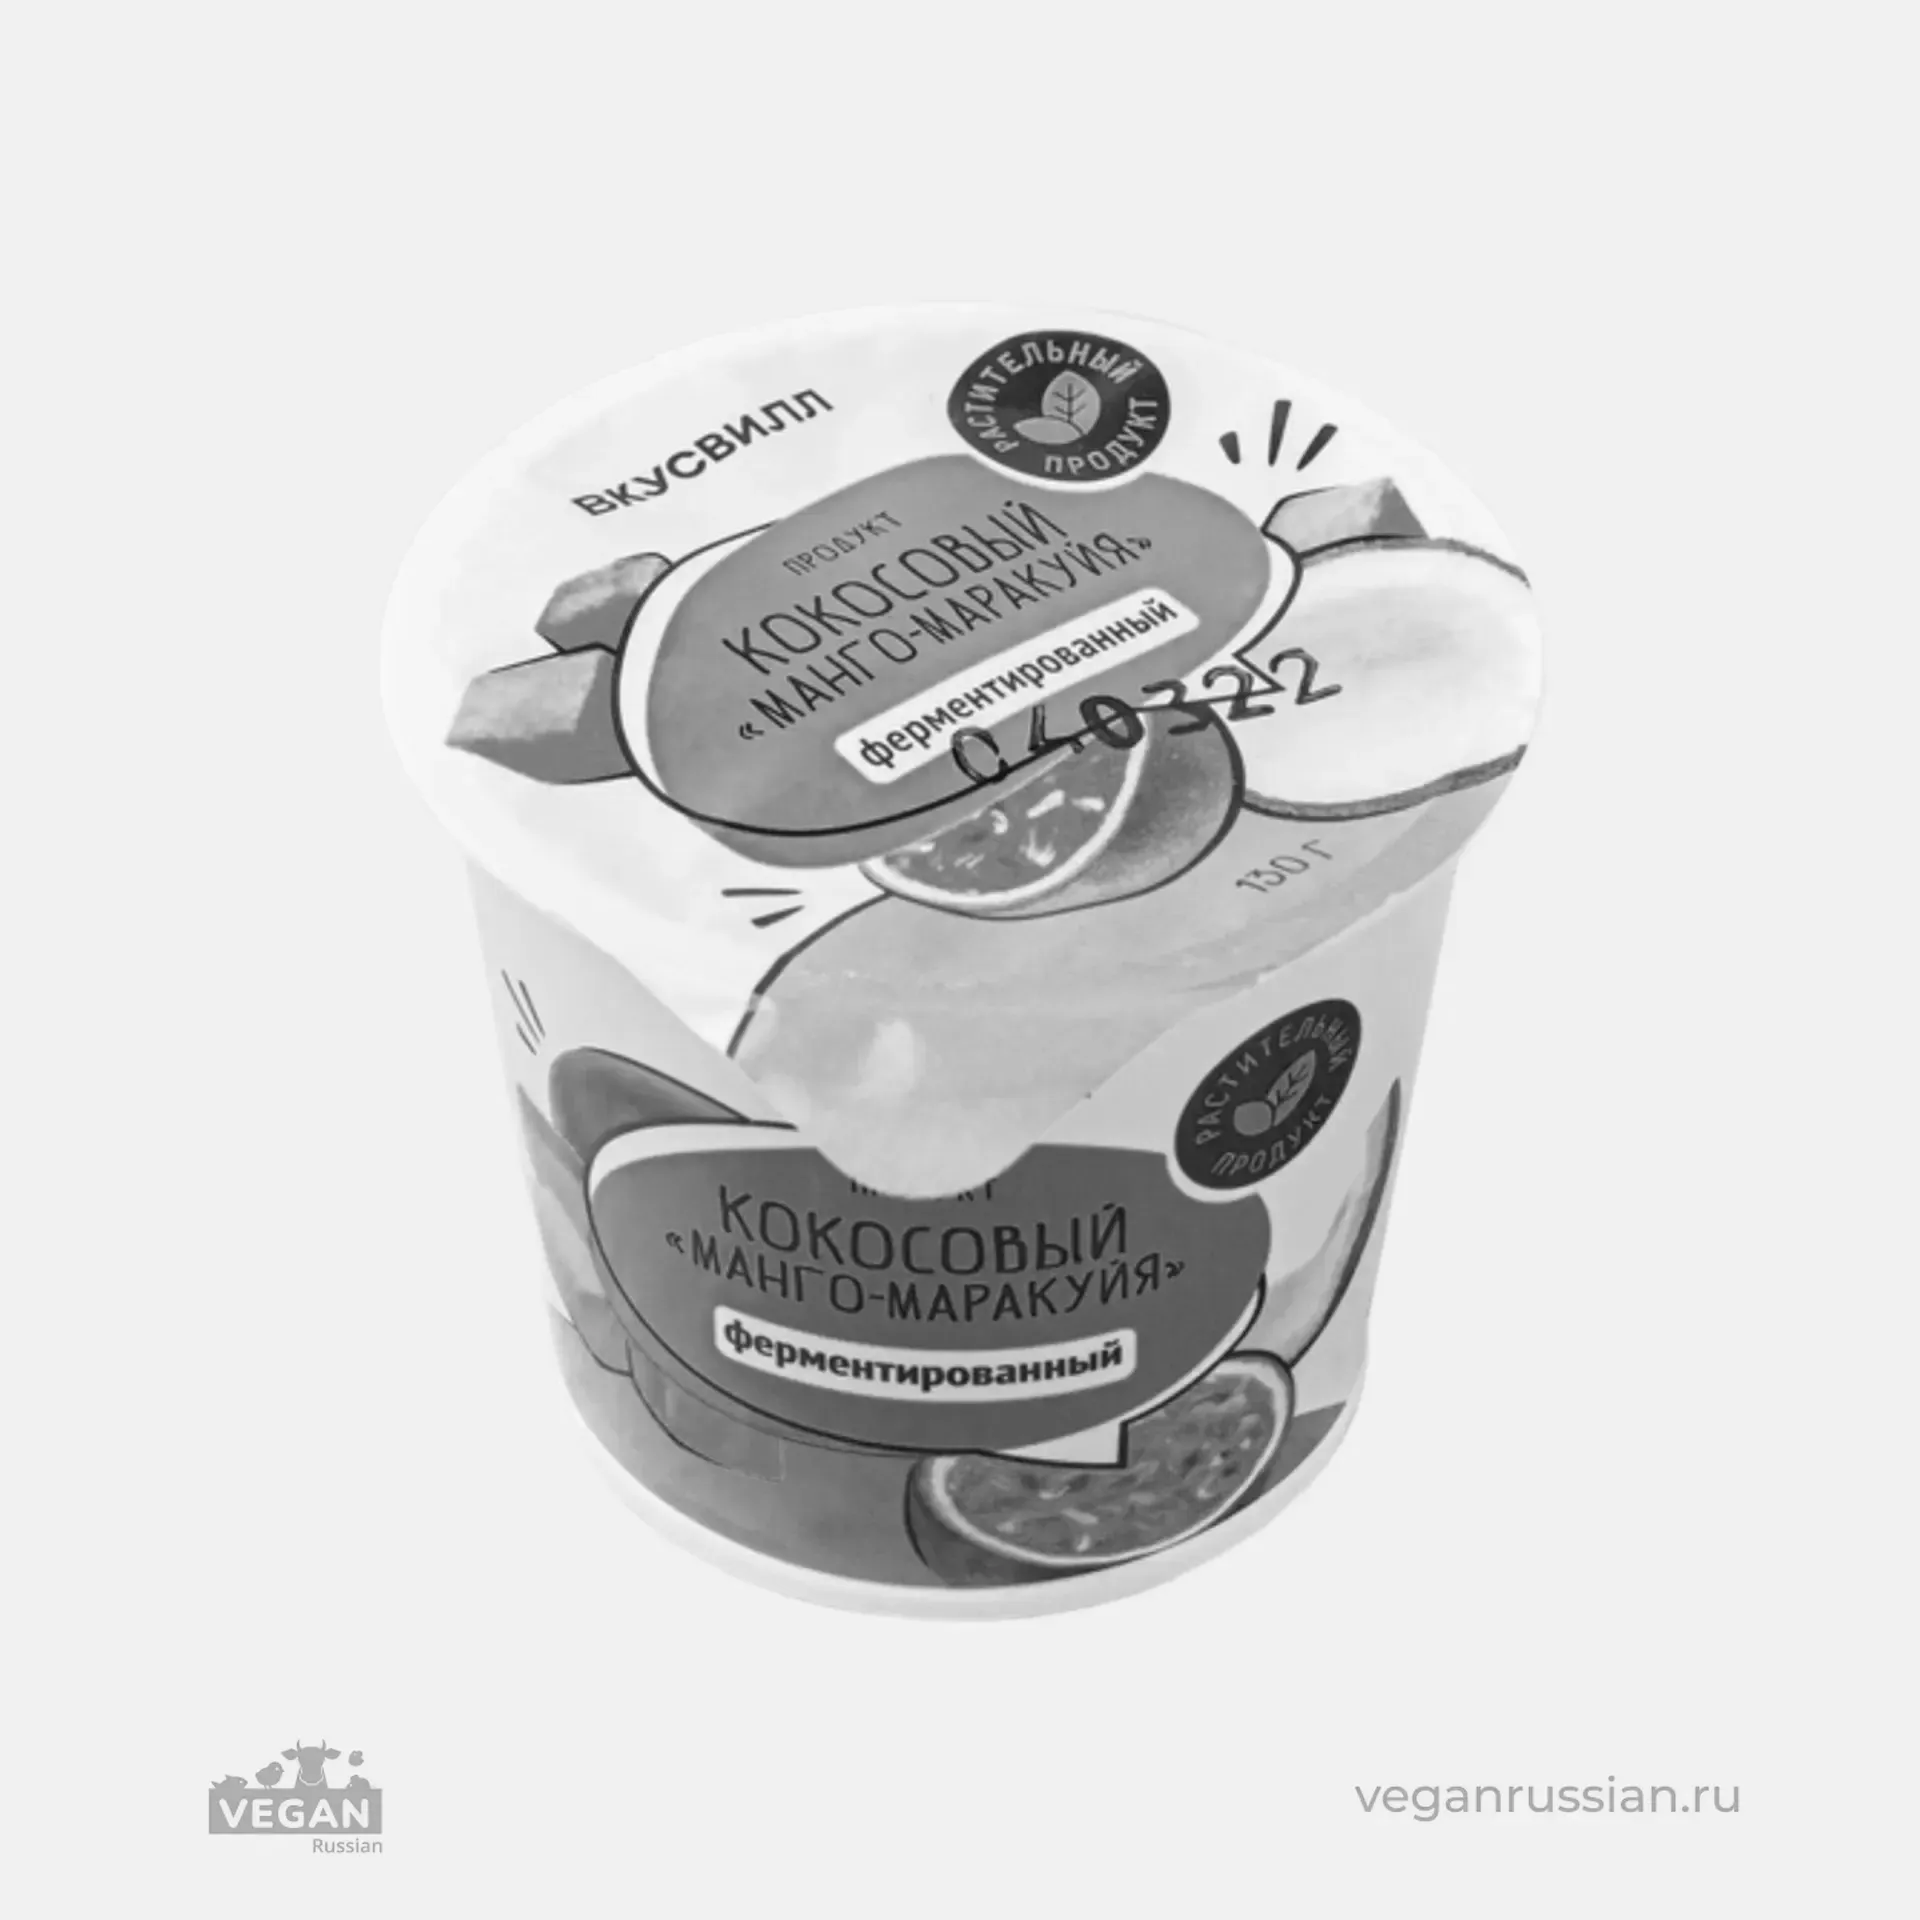 Архив: Йогурт кокосовый Манго-маракуйя ВкусВилл 130 г